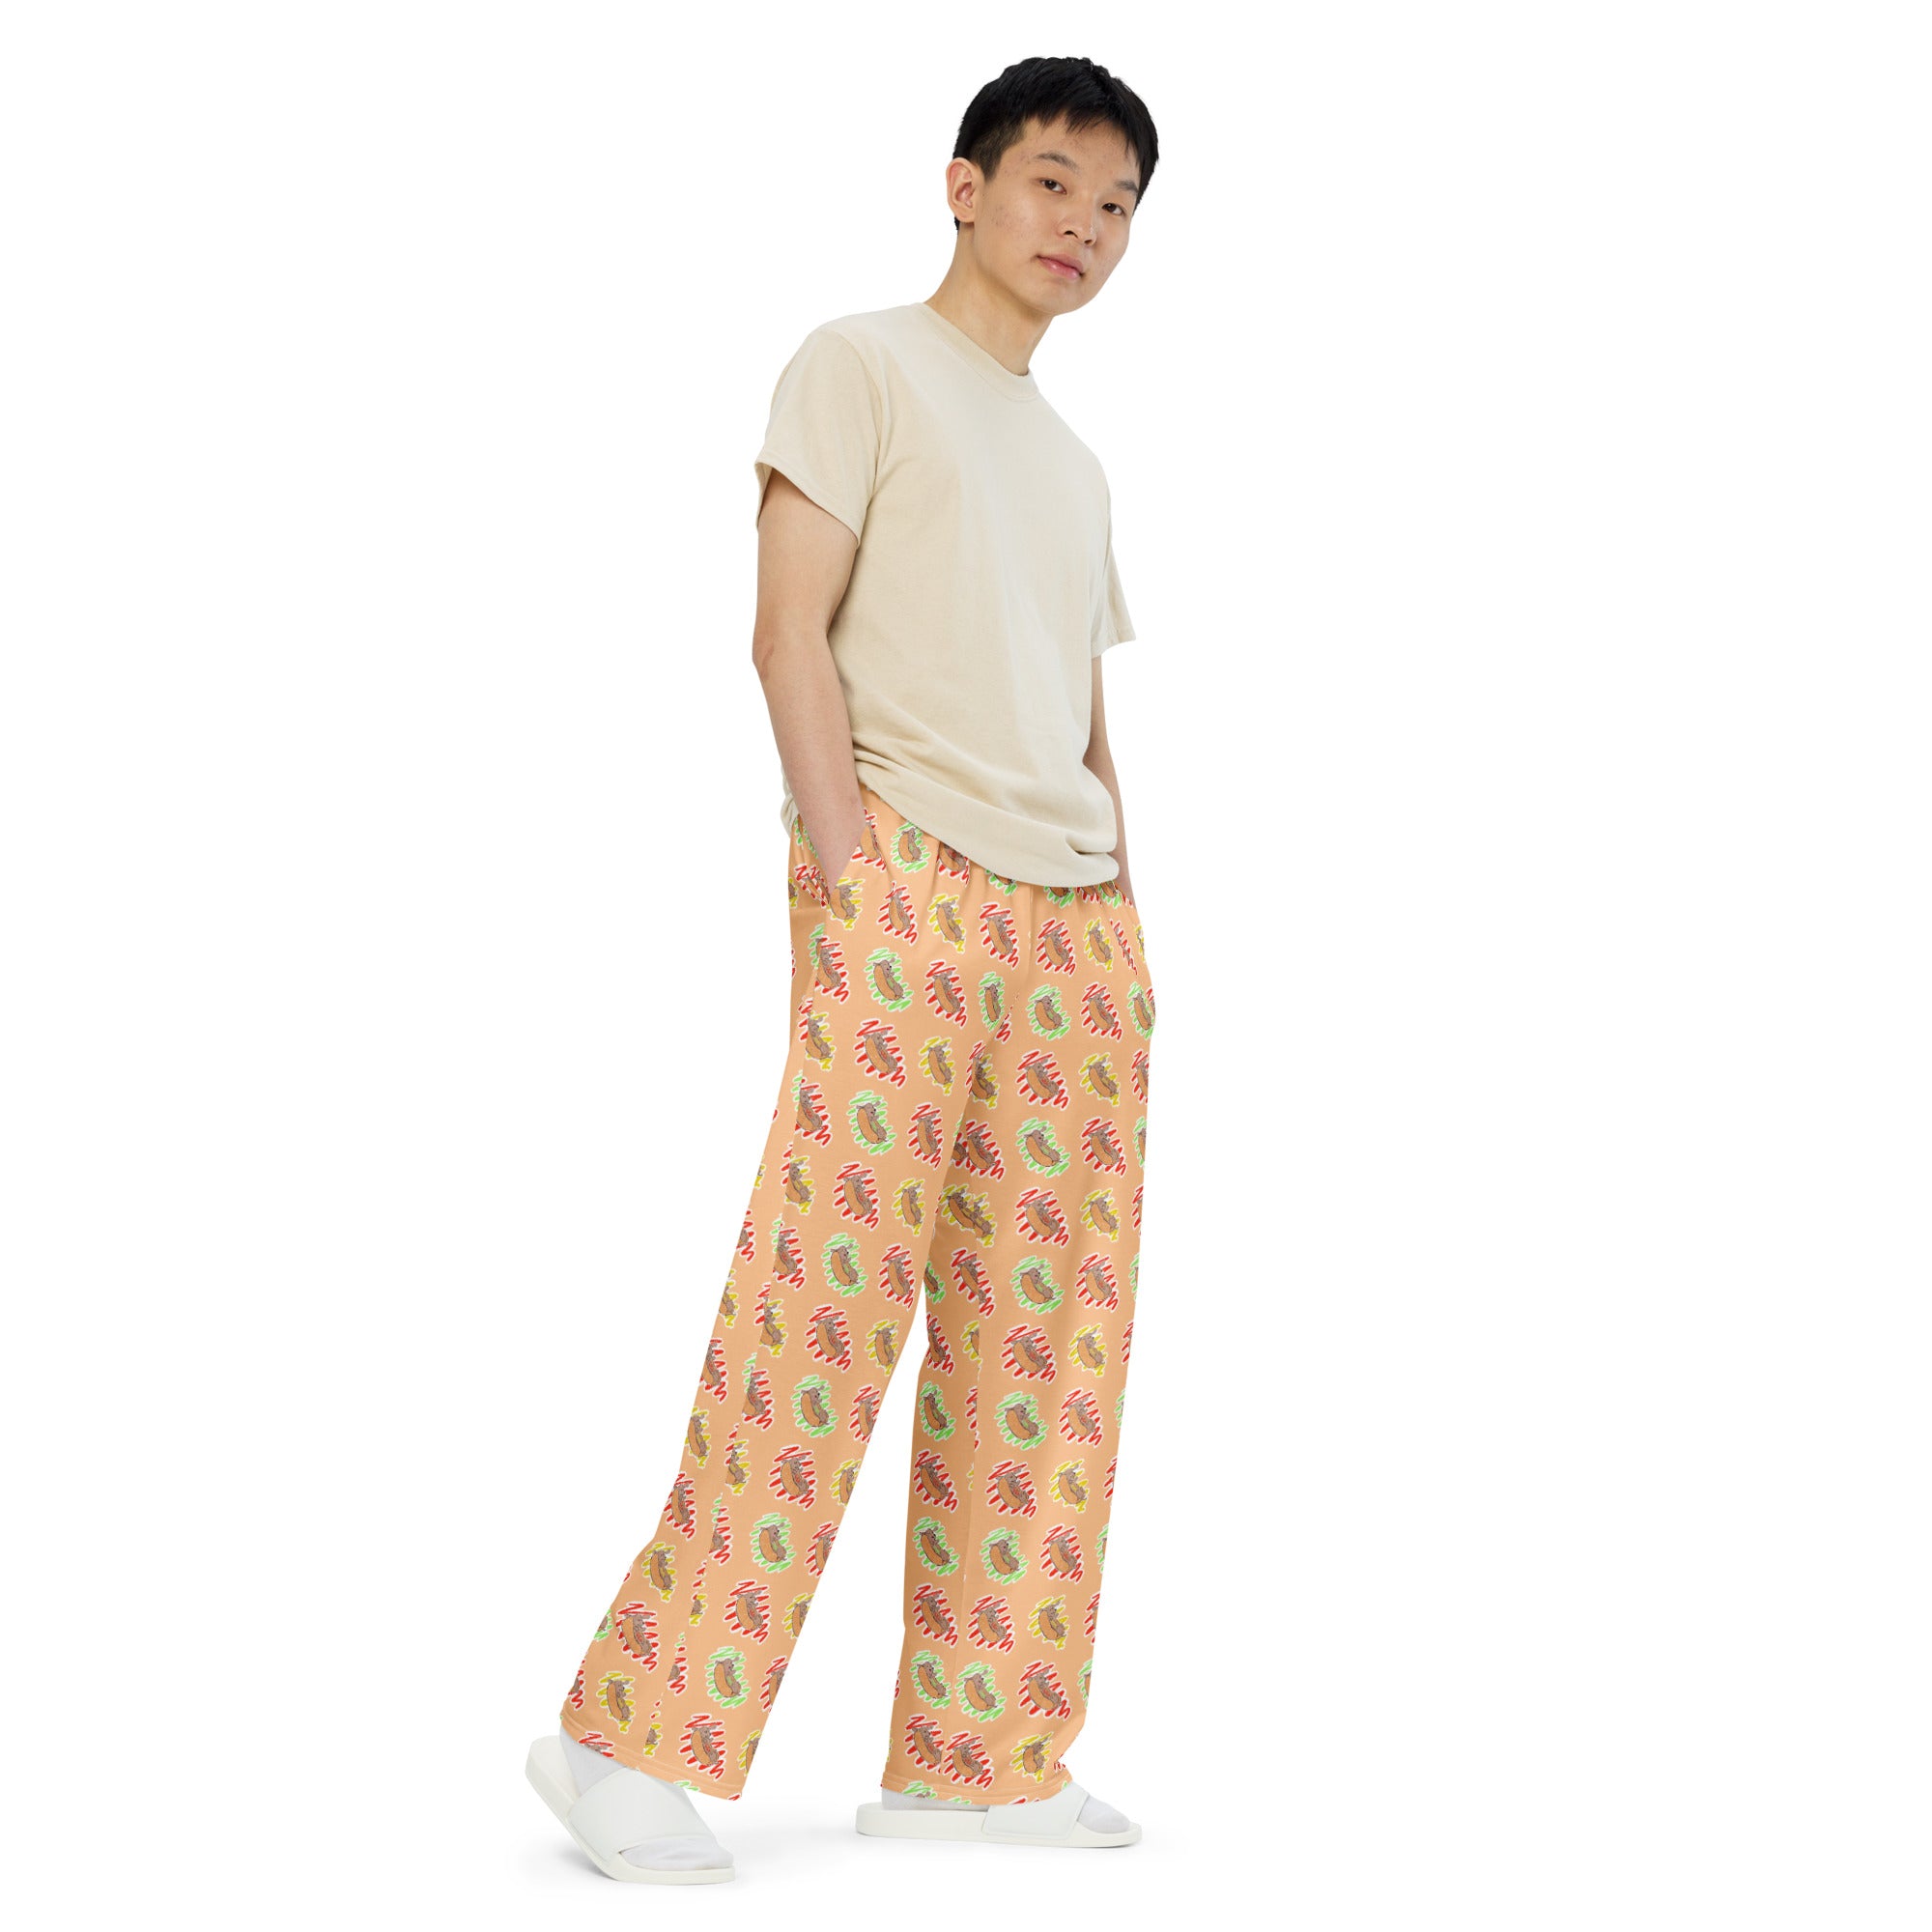 Hot Dog Lover Unisex Pajama Pants